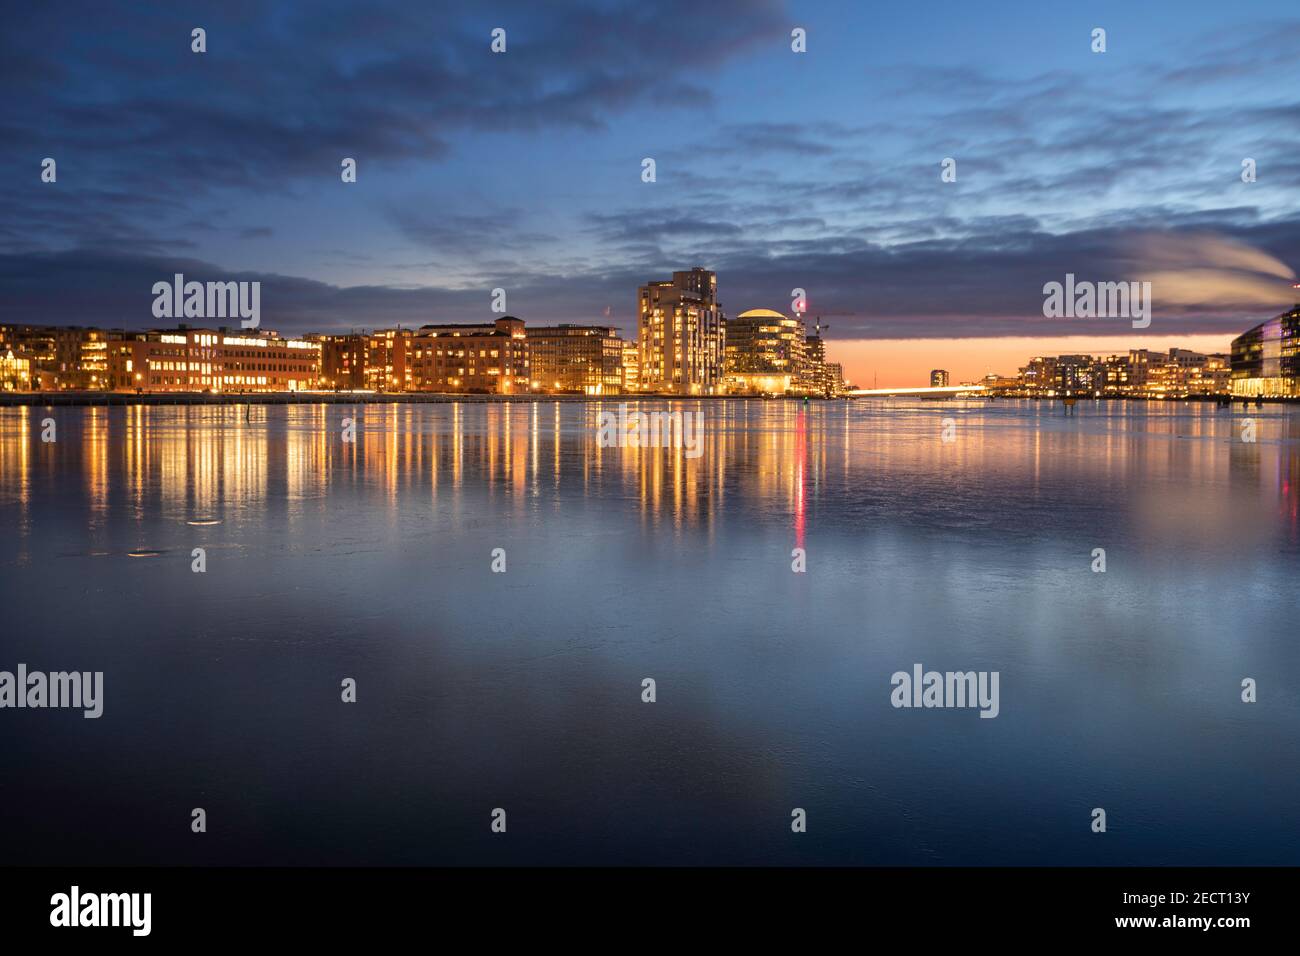 Copenhague réflexions de nuit avec canal gelé dans la région de Sydhavnen, Danemark Banque D'Images